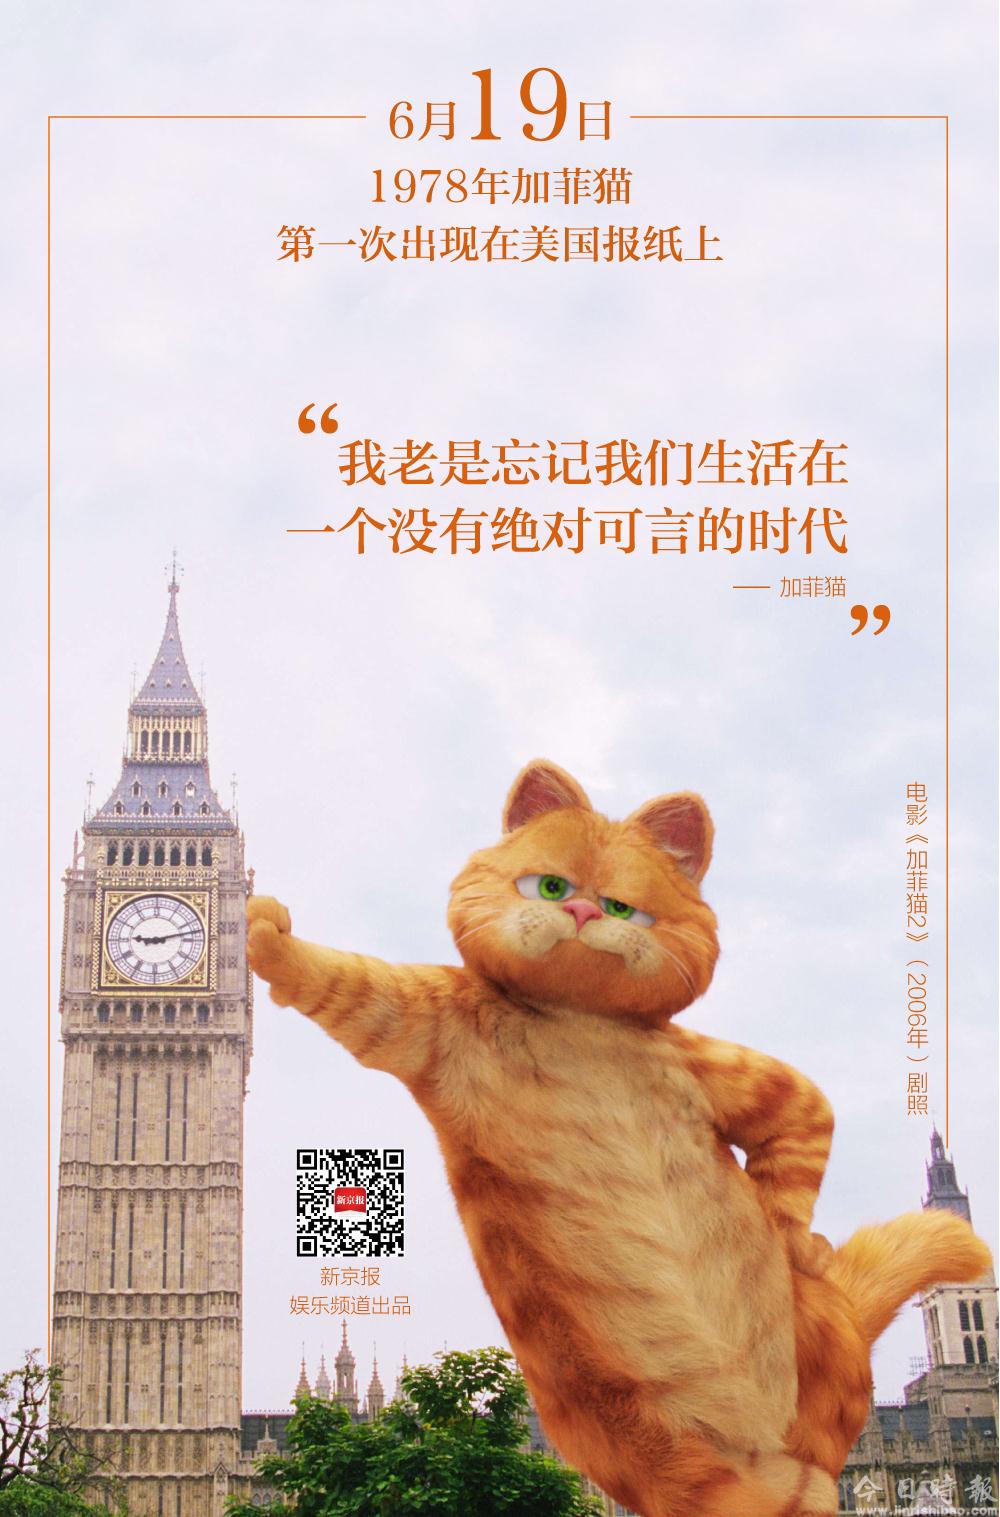 这只贪吃又爱说风凉话的猫，就是我们内心的写照丨日签 - 娱乐 - 新京报网